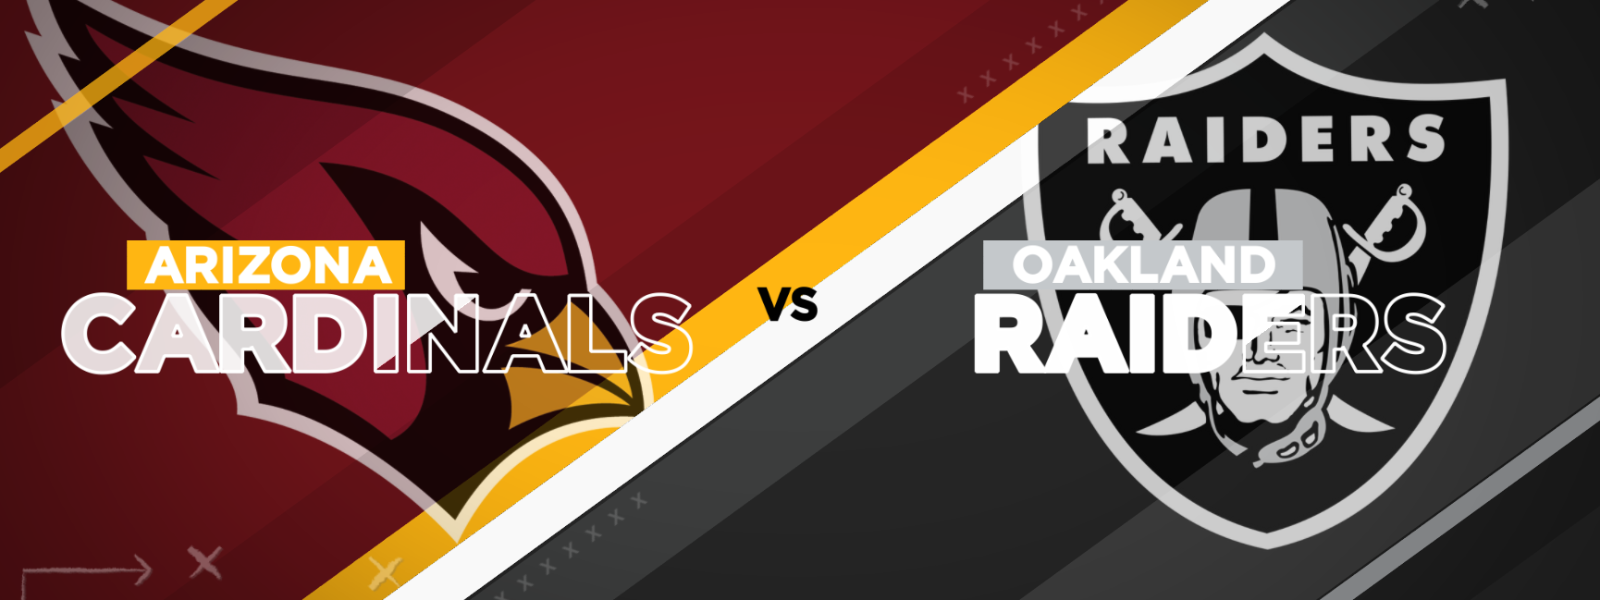 Cardinals-vs.-Raiders-4b5575d294.PNG